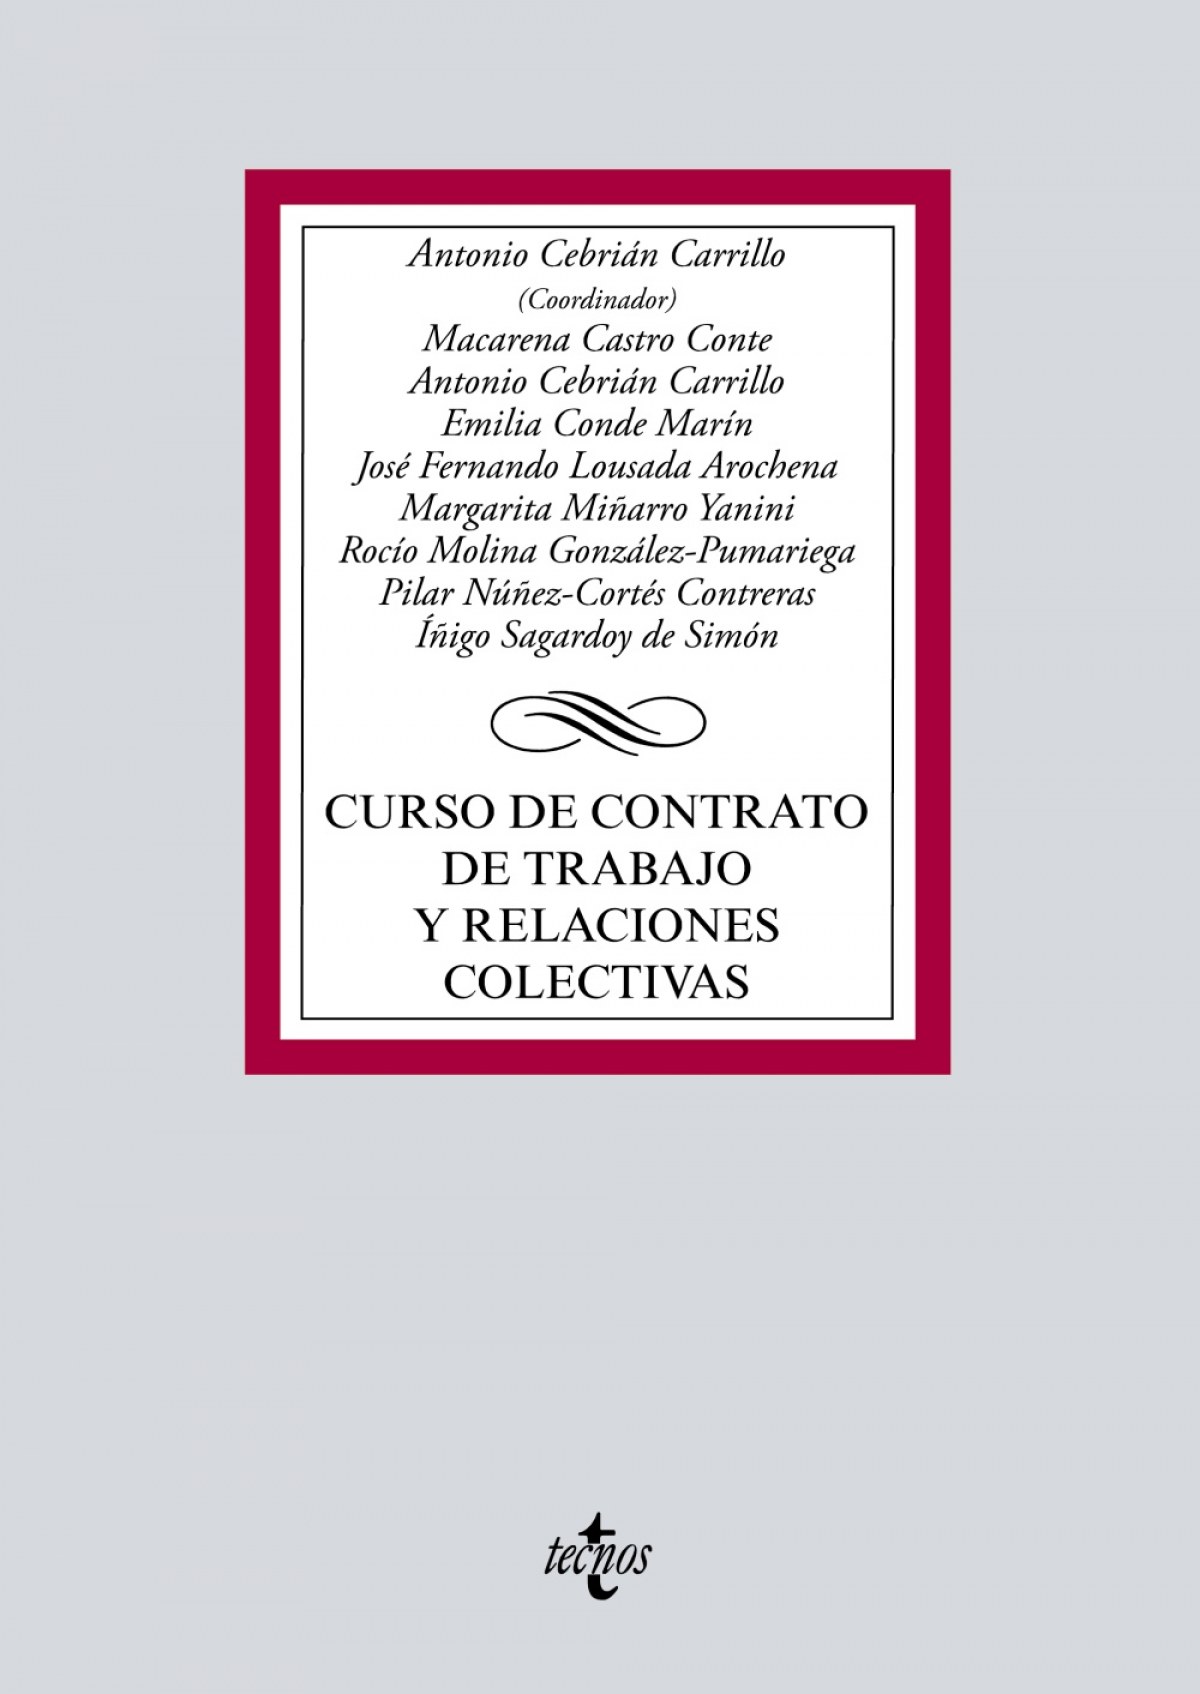 Imagen de portada del libro Curso de contrato de trabajo y relaciones colectivas